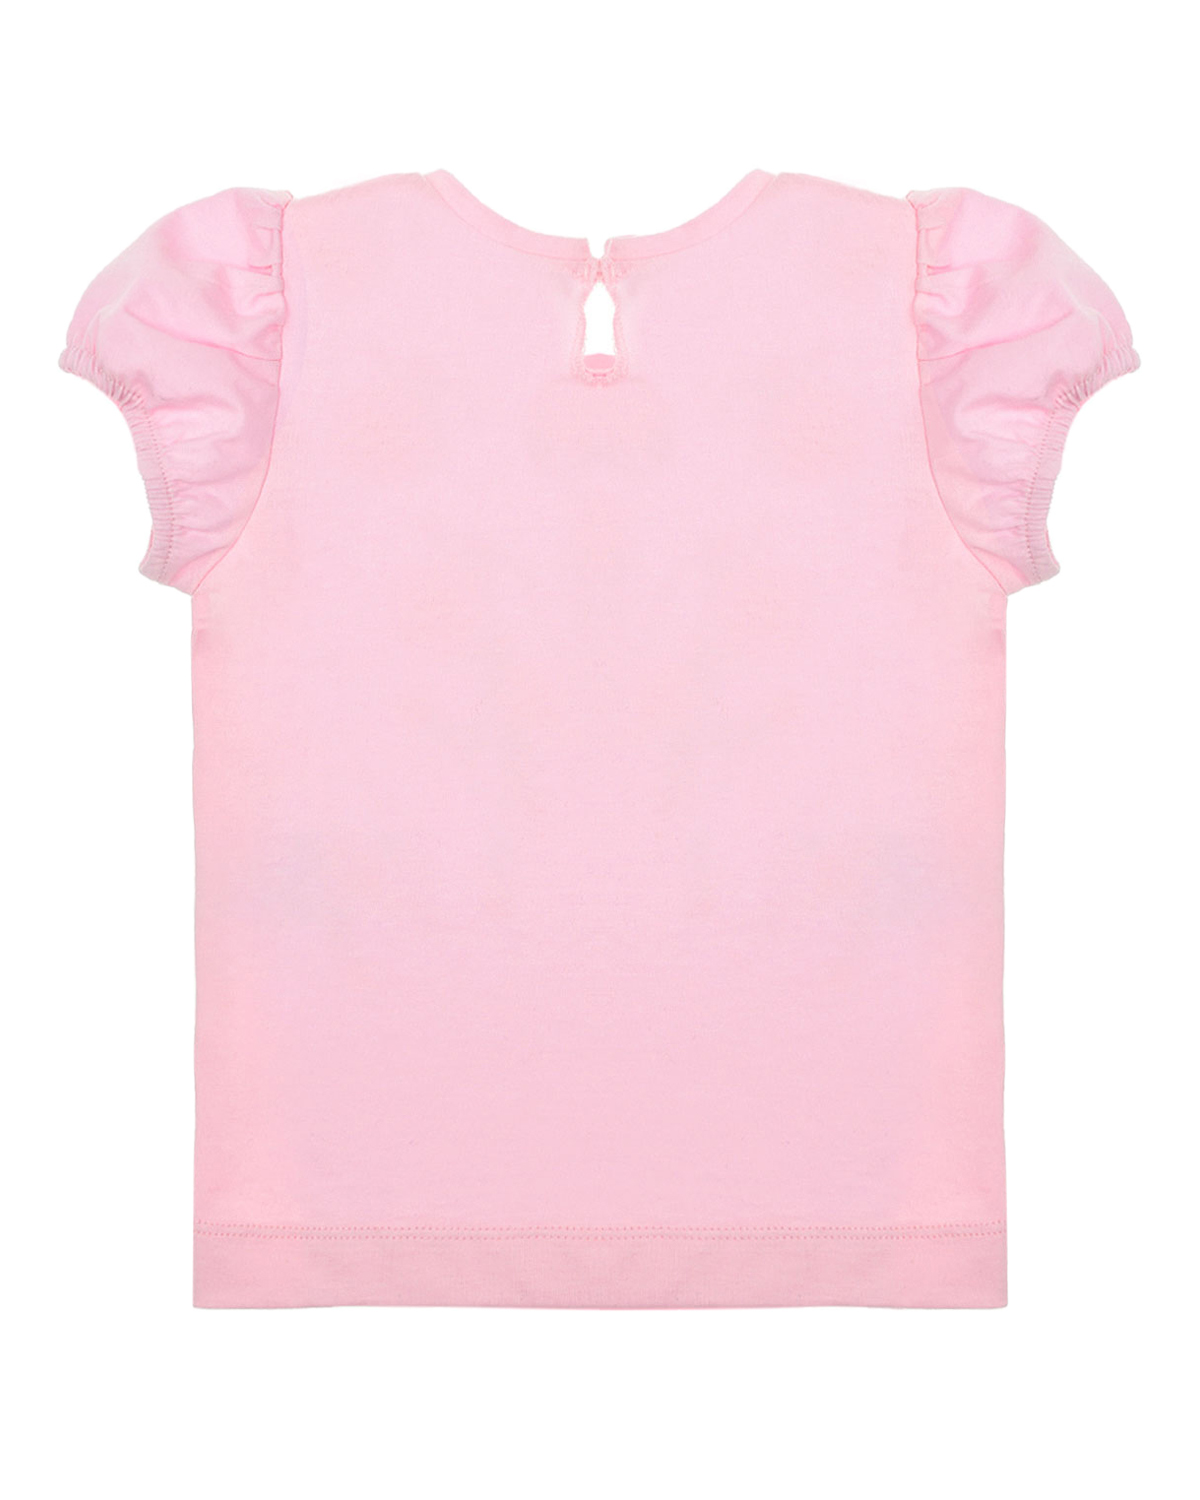 Розовая футболка с цветочным принтом Monnalisa детская, размер 74 - фото 2